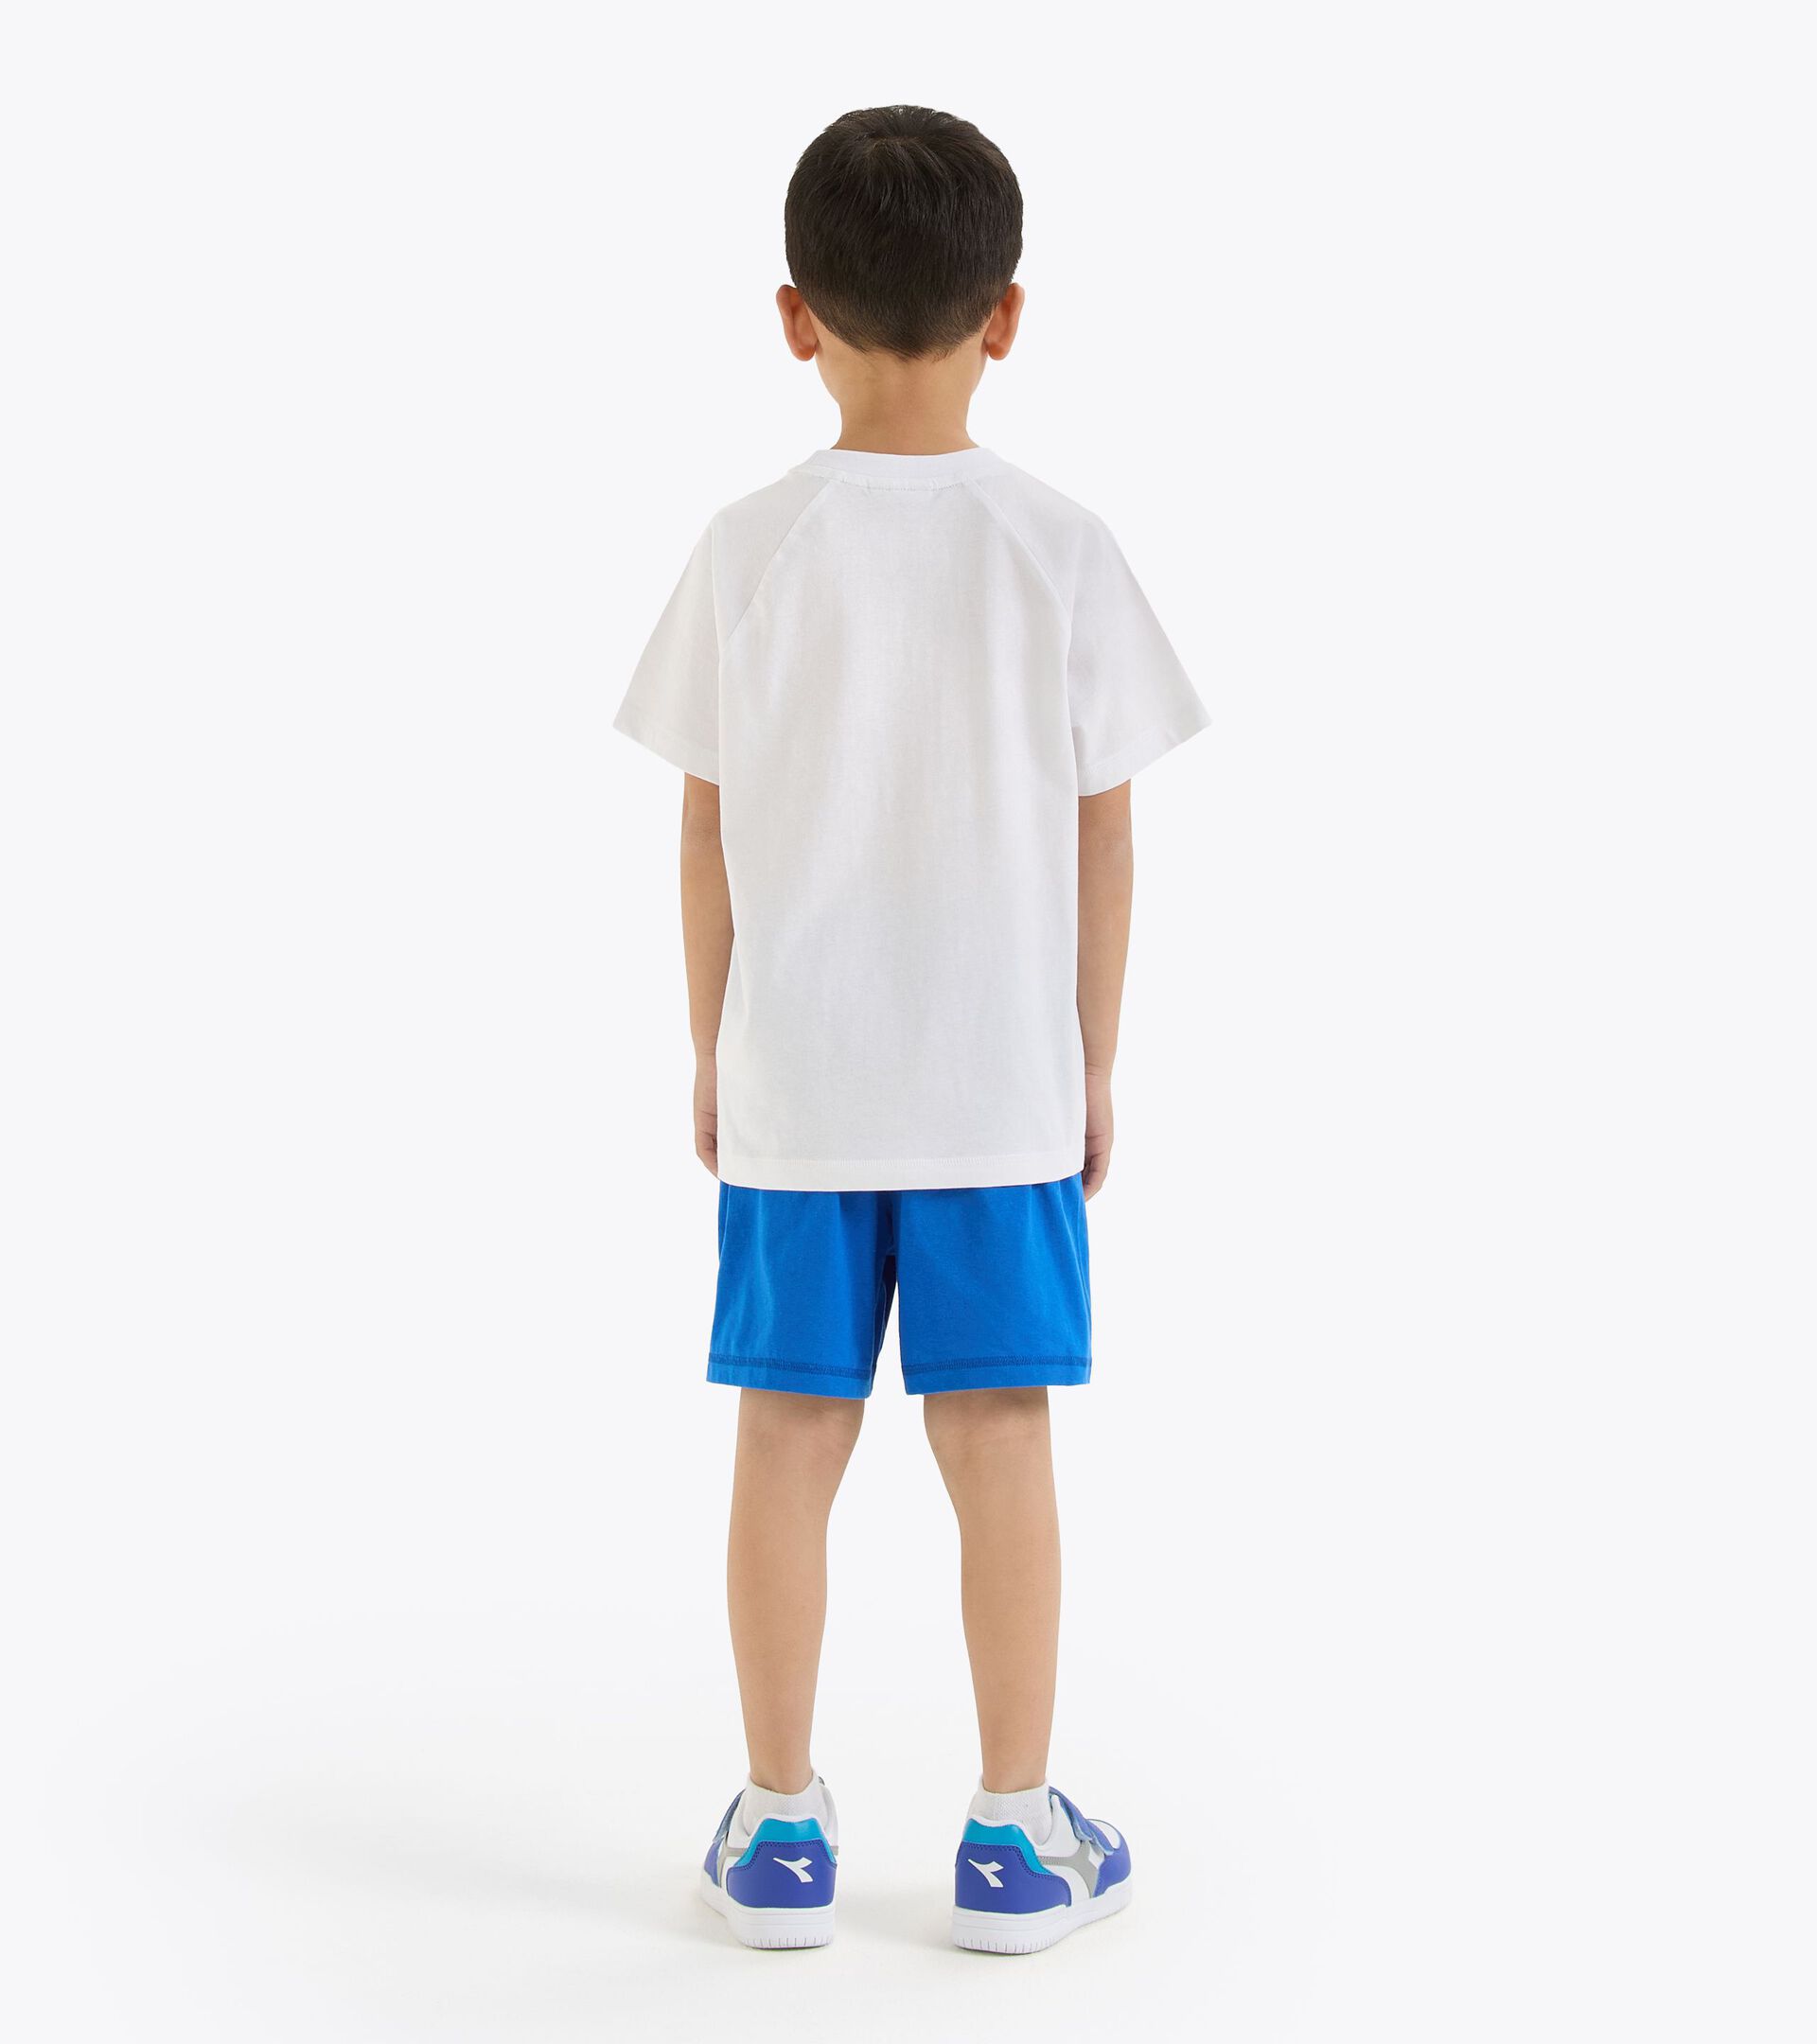 Conjunto deportivo - Camiseta y pantalones cortos - Unisex - Niños/niñas y adolescentes JU. SET SS CORE BLANCO VIVO - Diadora